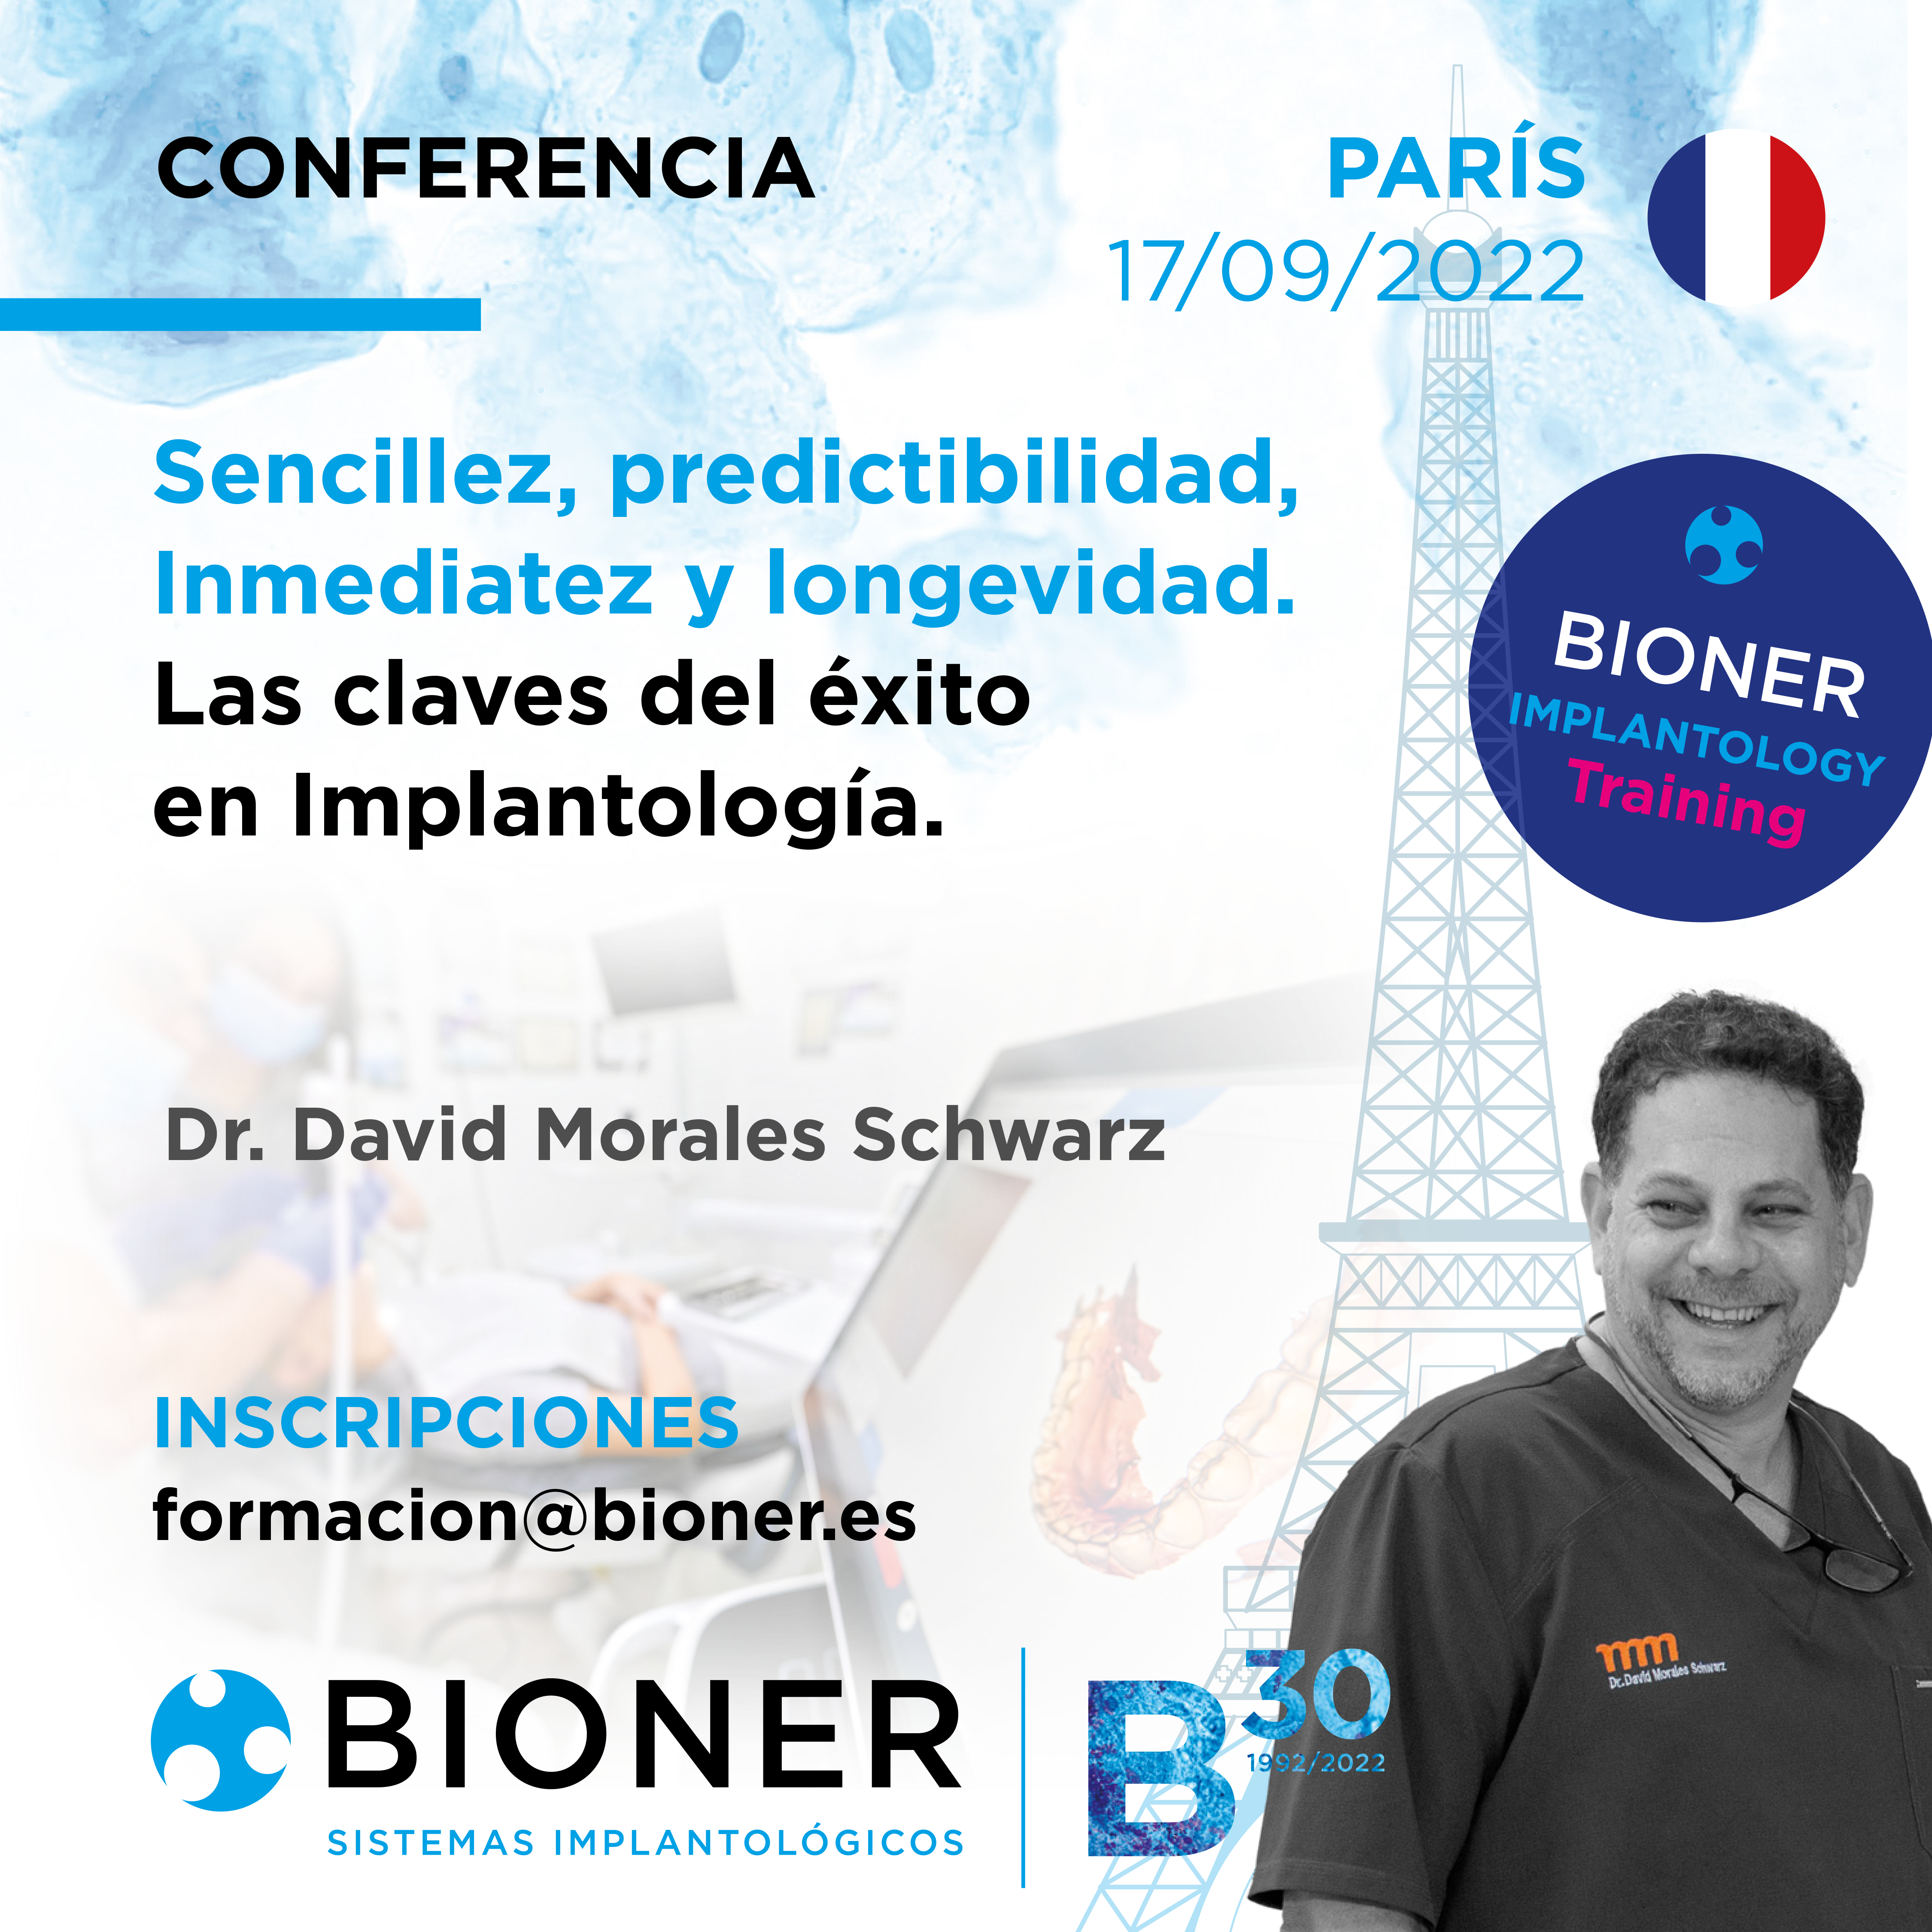 BIONER Paris Dr.Morales las claves del éxito en implantología